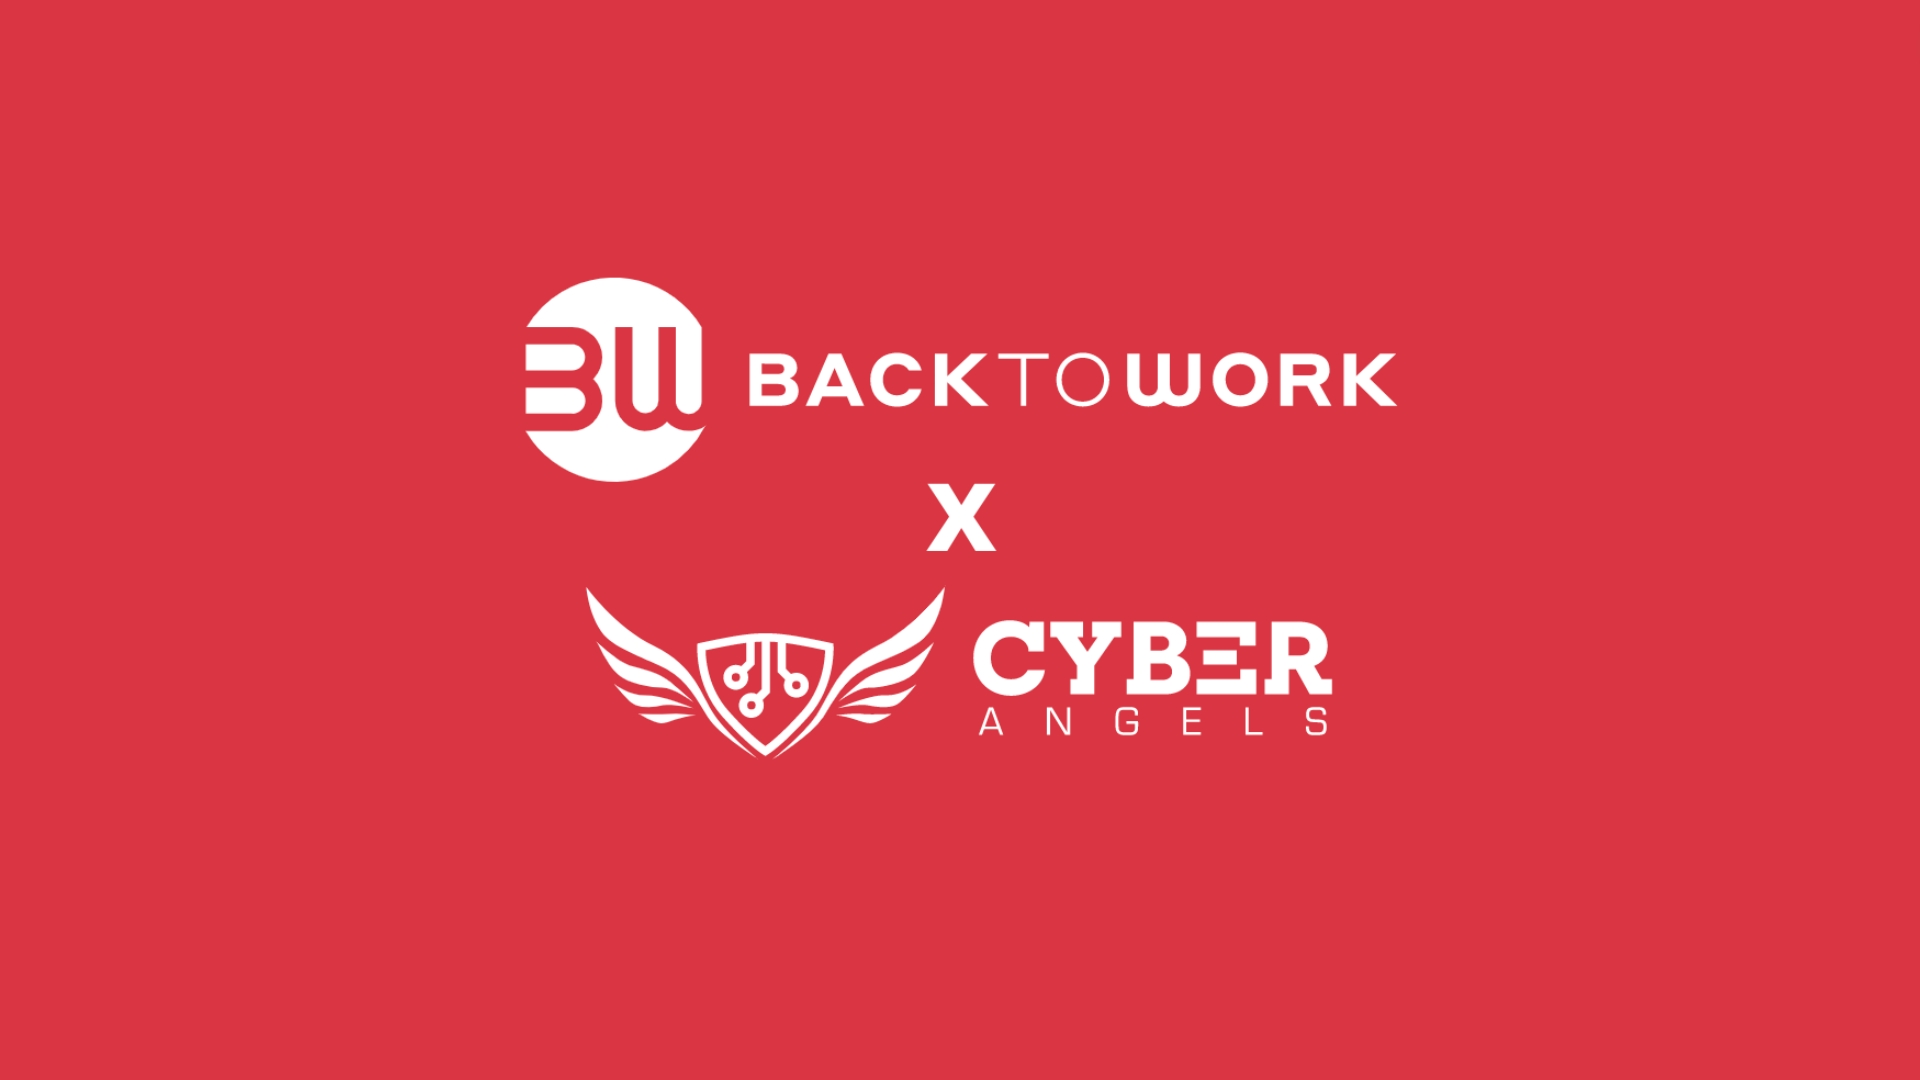 Sicurezza informatica e investimenti: la collaborazione tra Cyberangels e Backtowork per investitori consapevoli